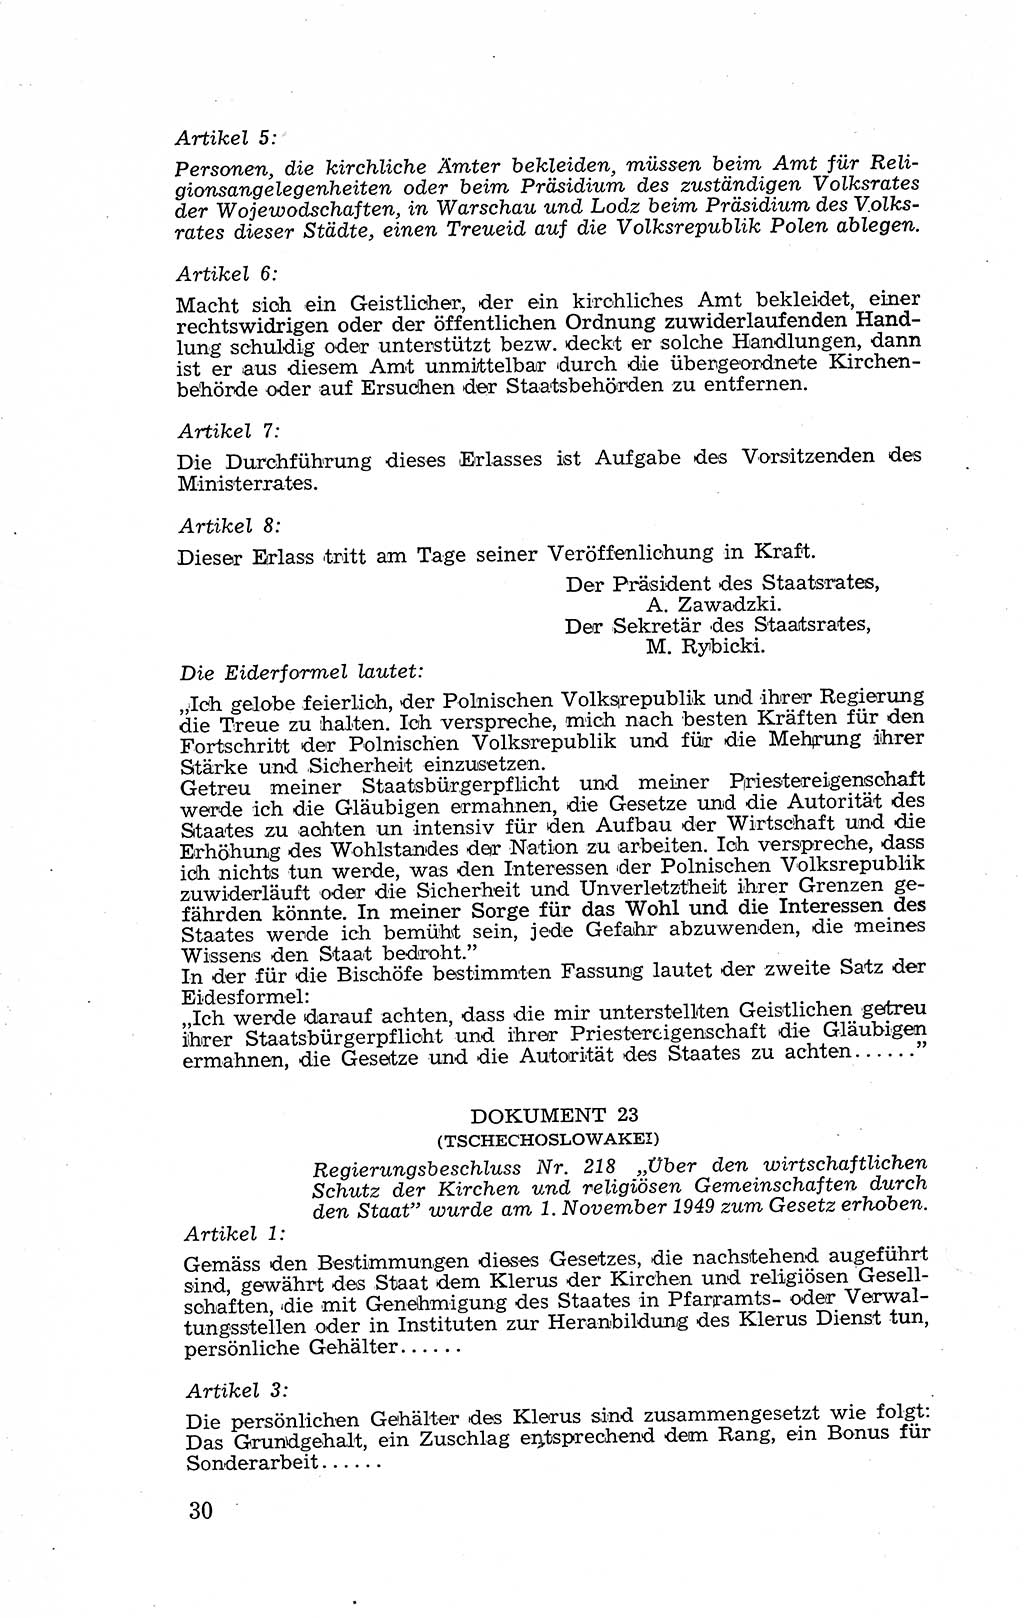 Recht in Fesseln, Dokumente, Internationale Juristen-Kommission [Bundesrepublik Deutschland (BRD)] 1955, Seite 30 (R. Dok. IJK BRD 1955, S. 30)